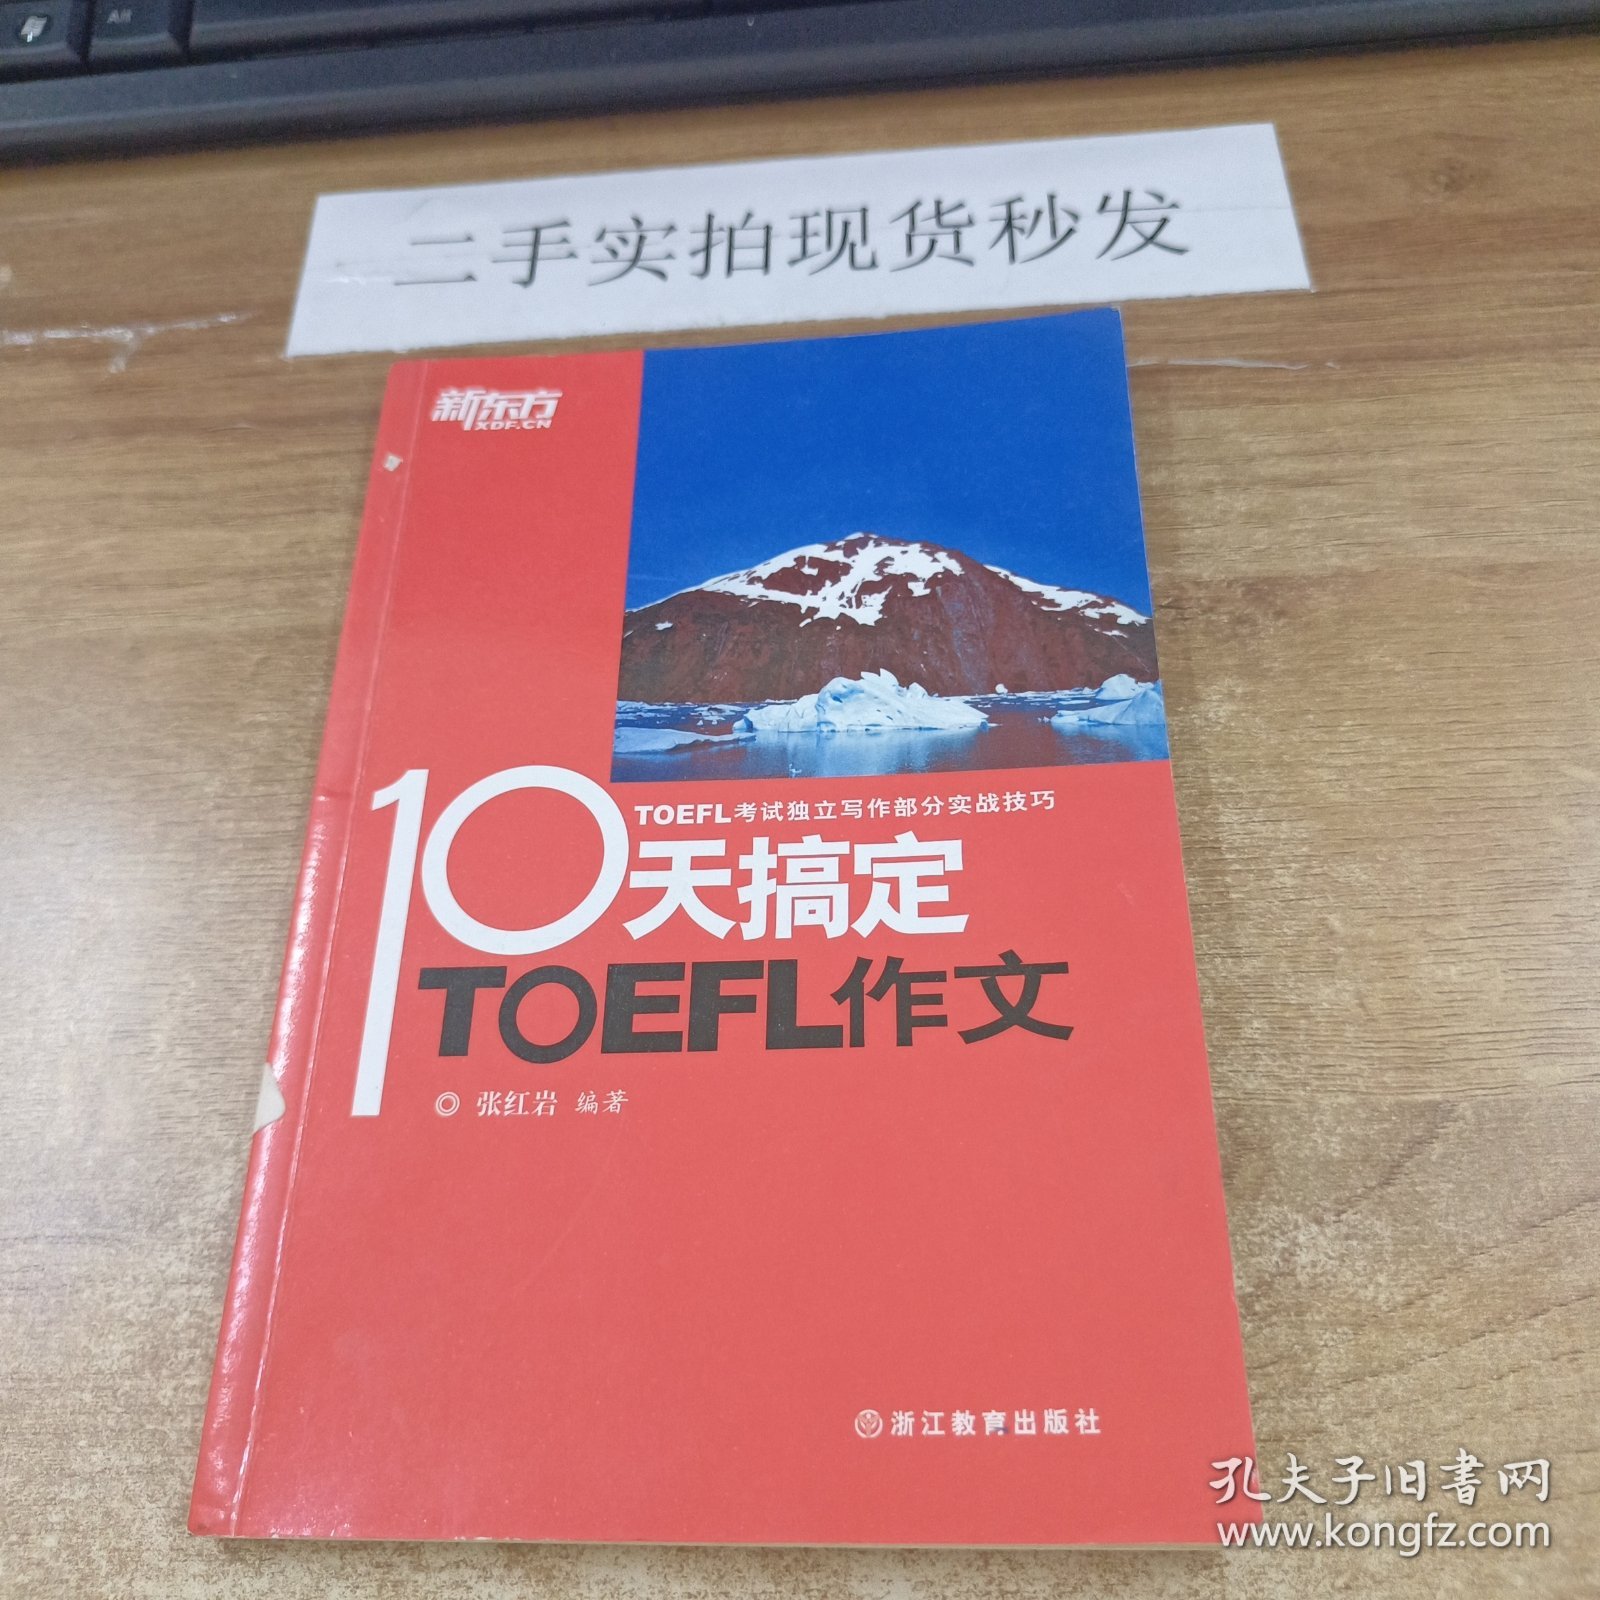 新东方 10天搞定TOEFL作文